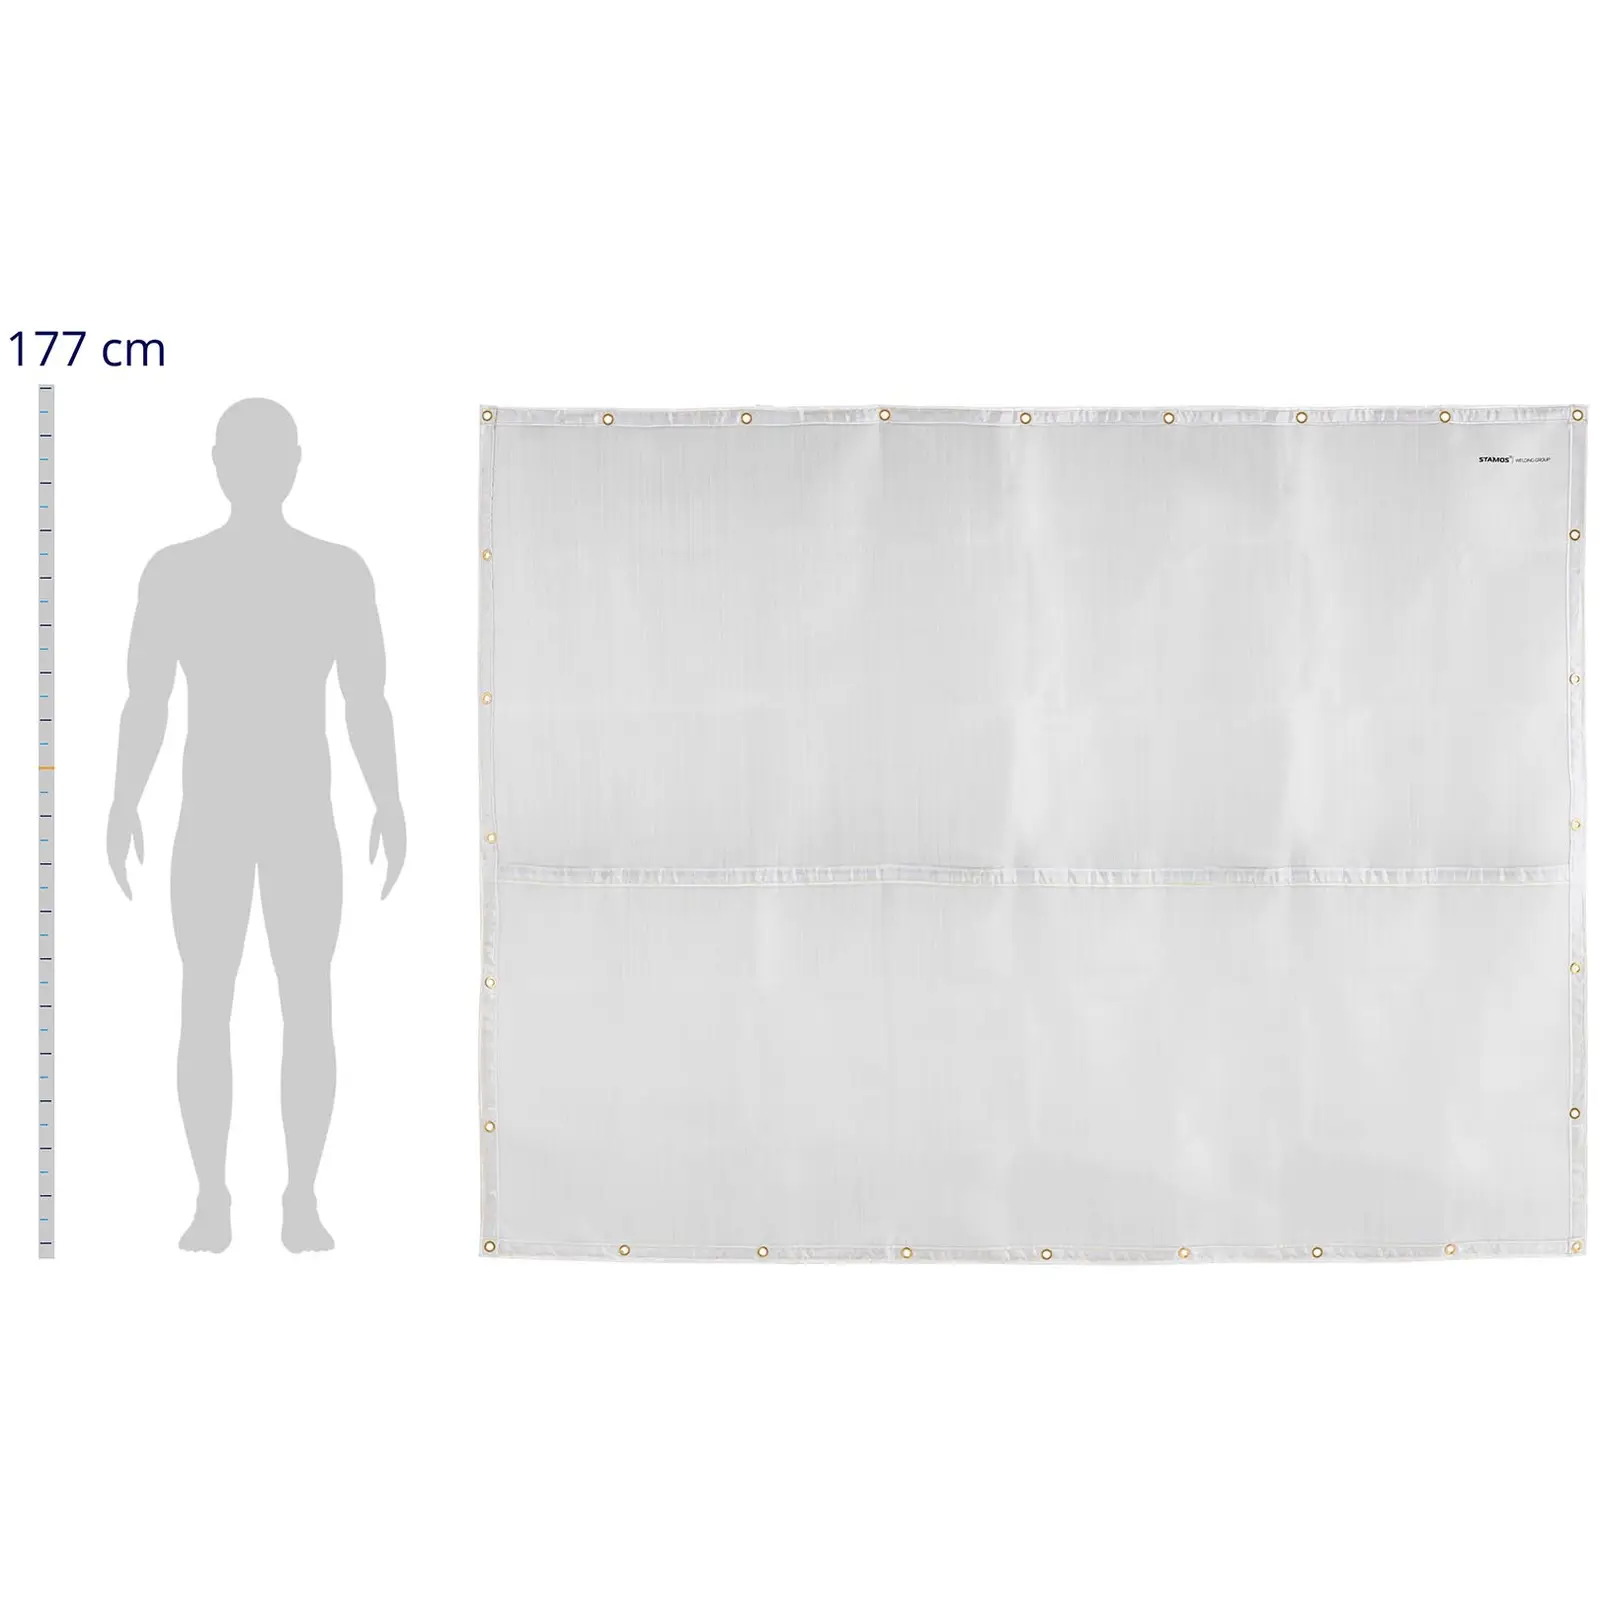 Coperta ignifuga - Fibra di vetro - 236 x 174 cm - Fino a 1.000 °C